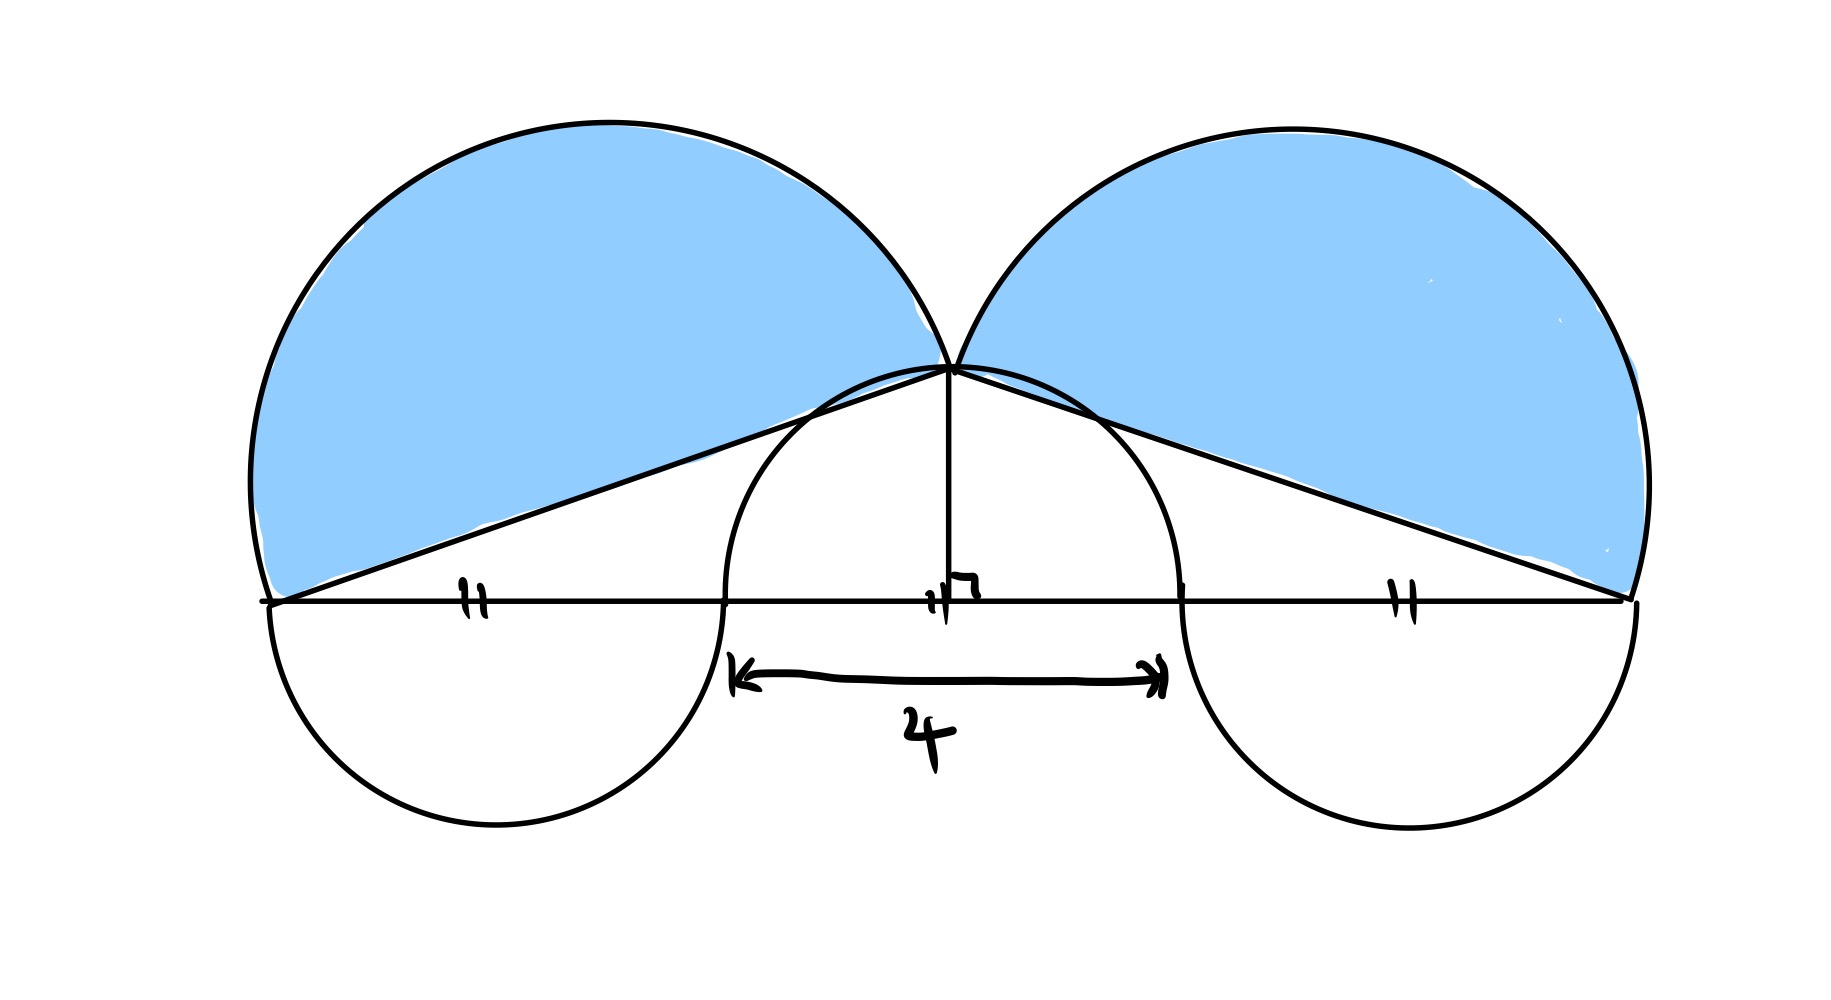 Five semi-circles special configuration II